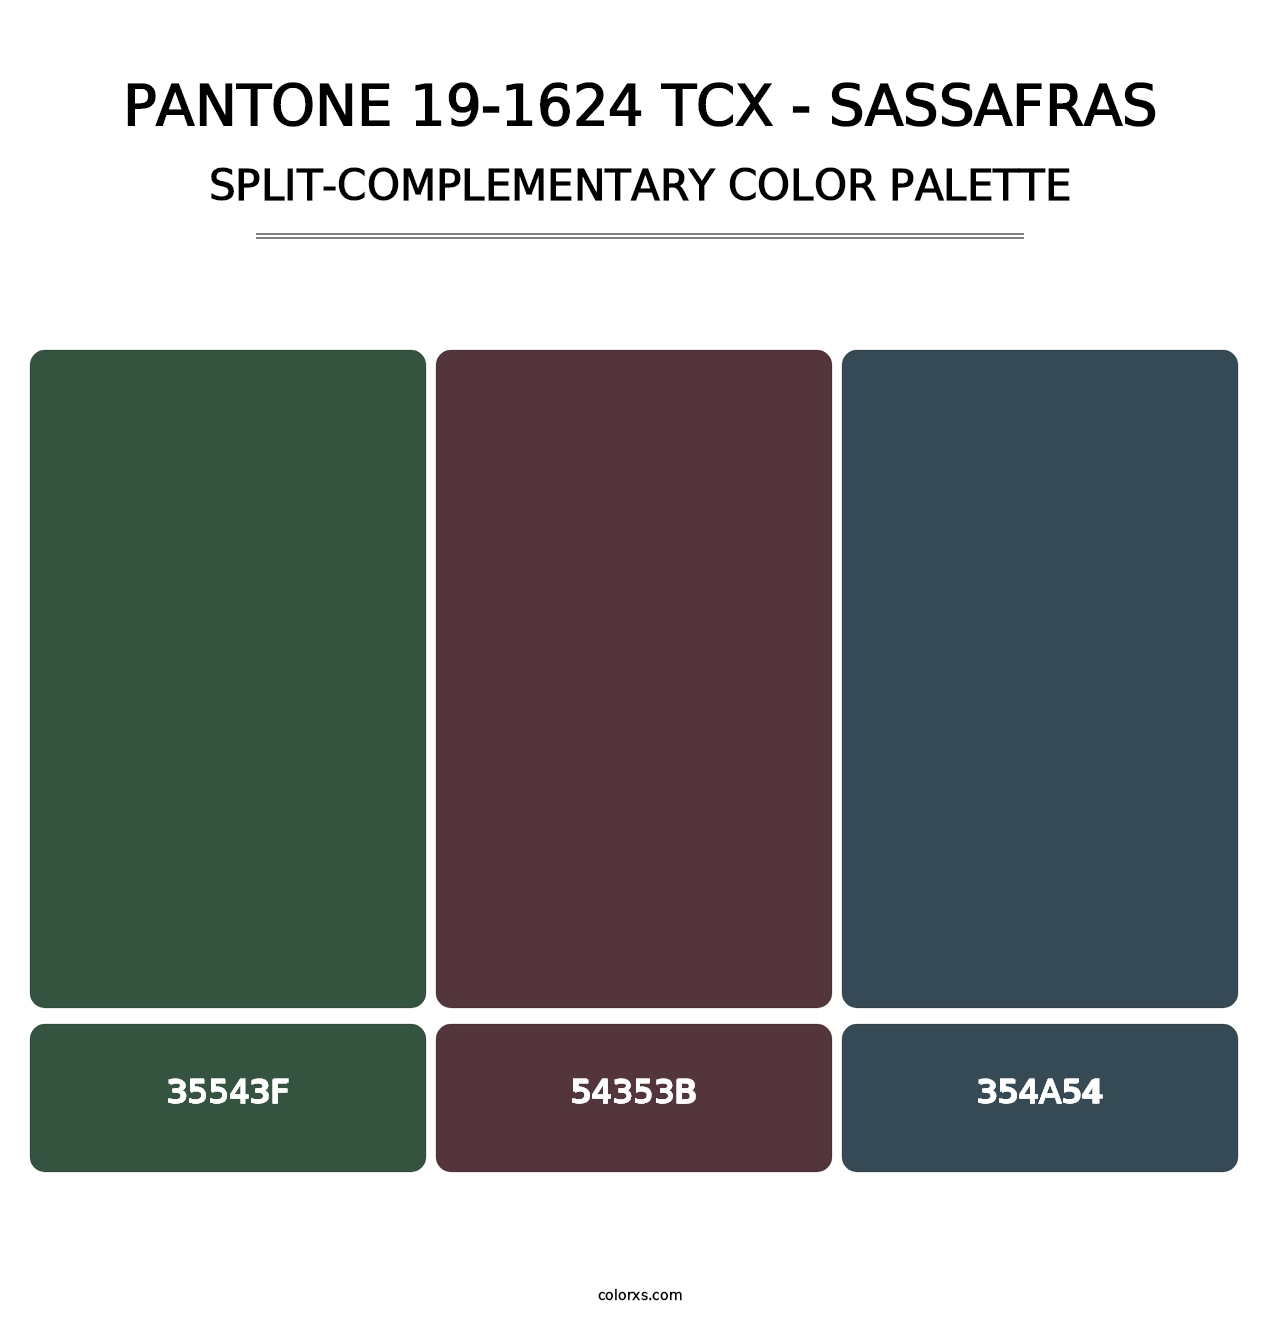 PANTONE 19-1624 TCX - Sassafras - Split-Complementary Color Palette